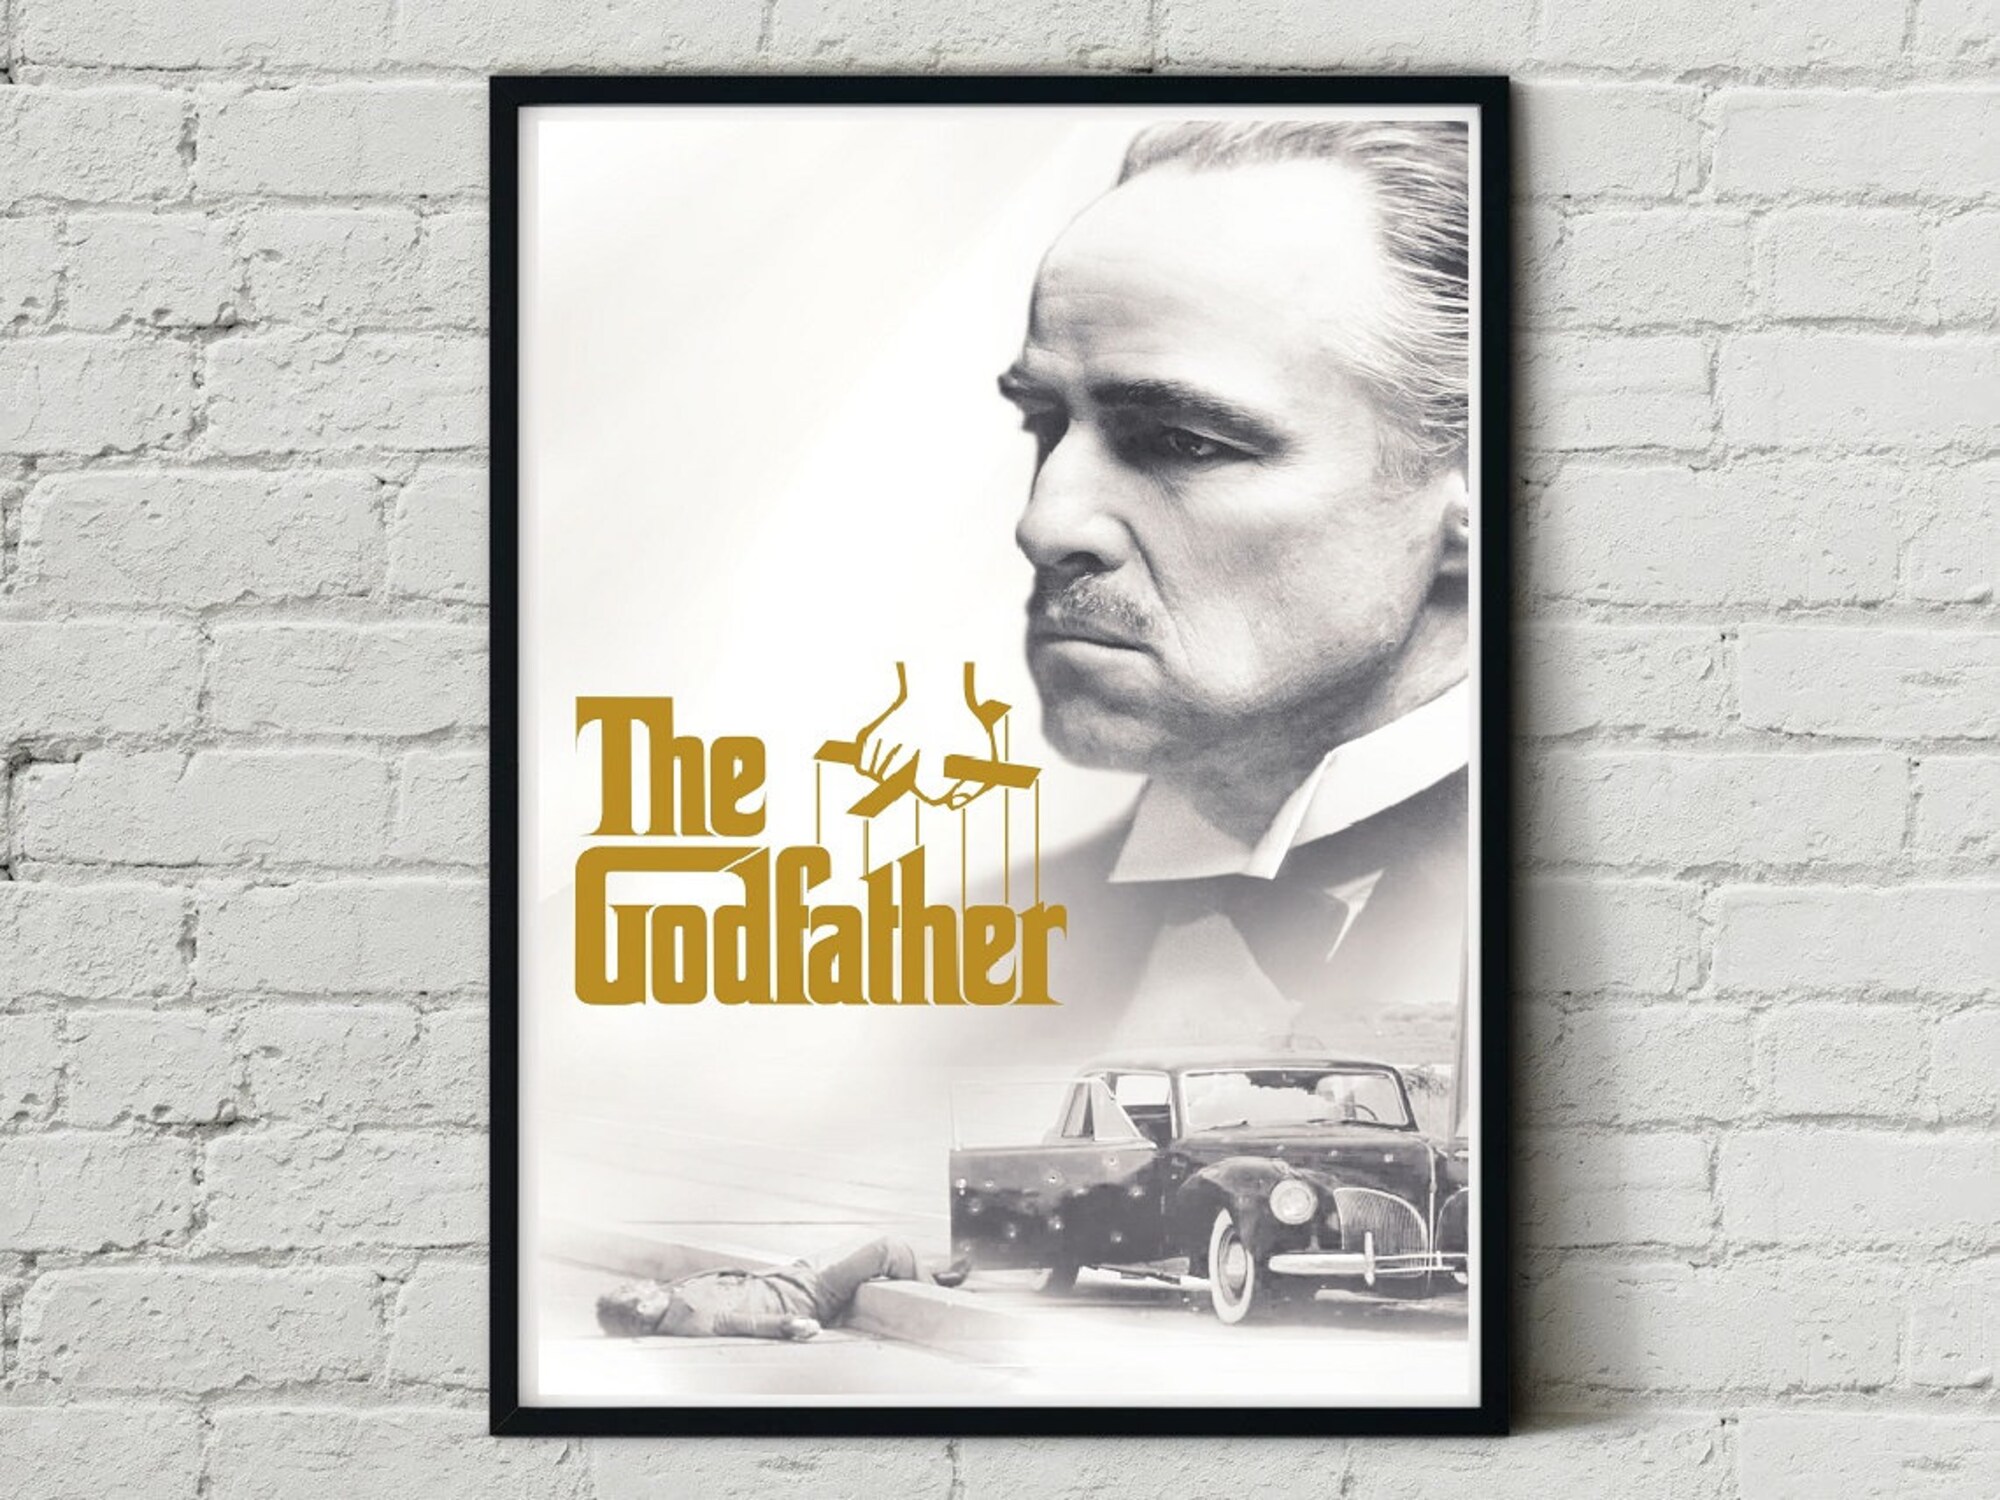 Discover The Godfather Original Classic Retro Art Design Movie Film Poster Print Wall Decor